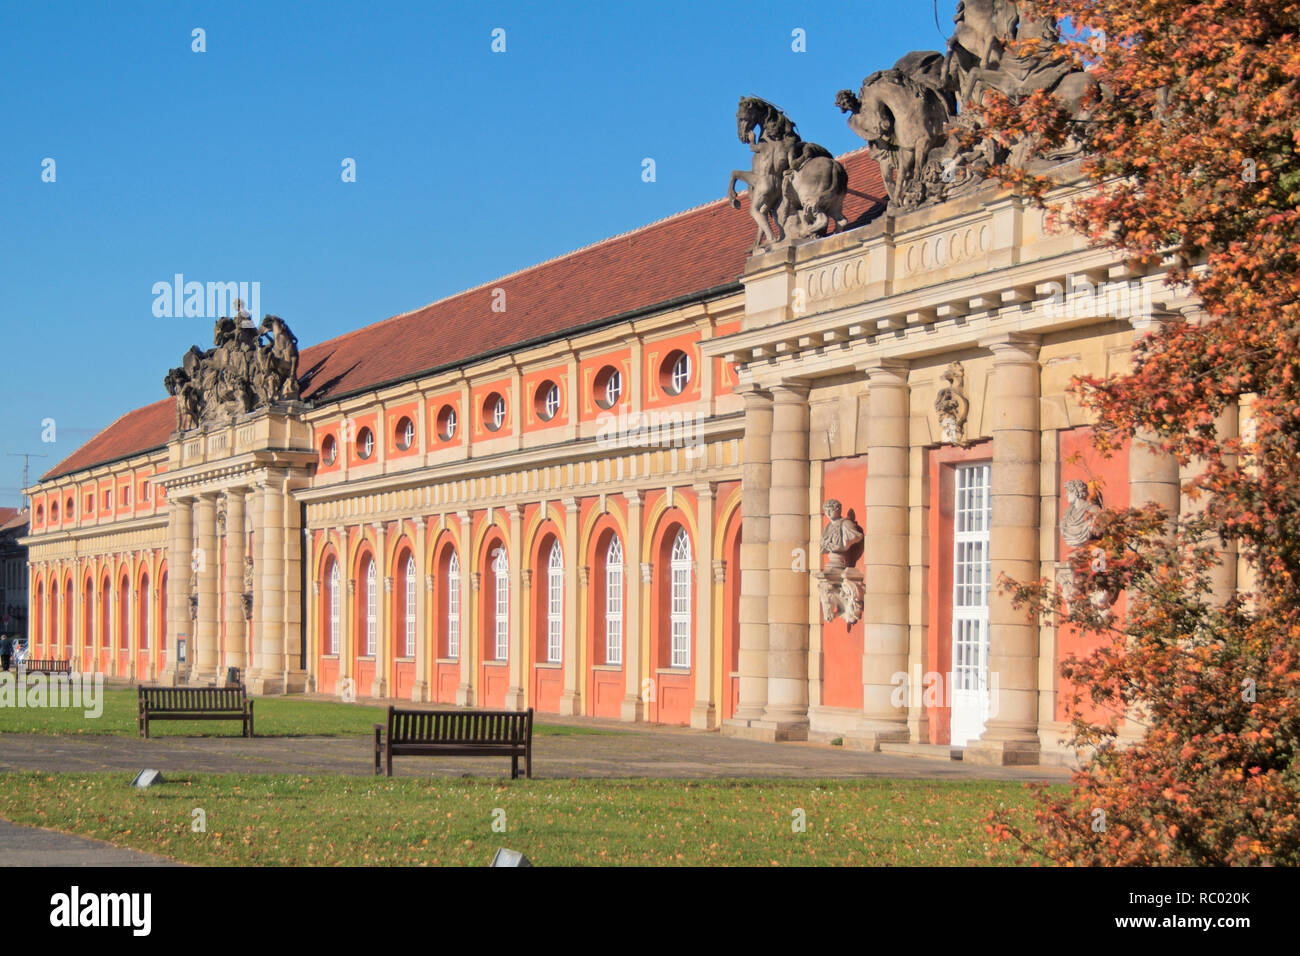 Filmmuseum im ehemaligen Marstall, der 1675 als Orangerie errichtet und seit 1714 als Pferdestall genutzt wurde, Potsdam, Brandenburg, Deutschland, Eu Stockfoto